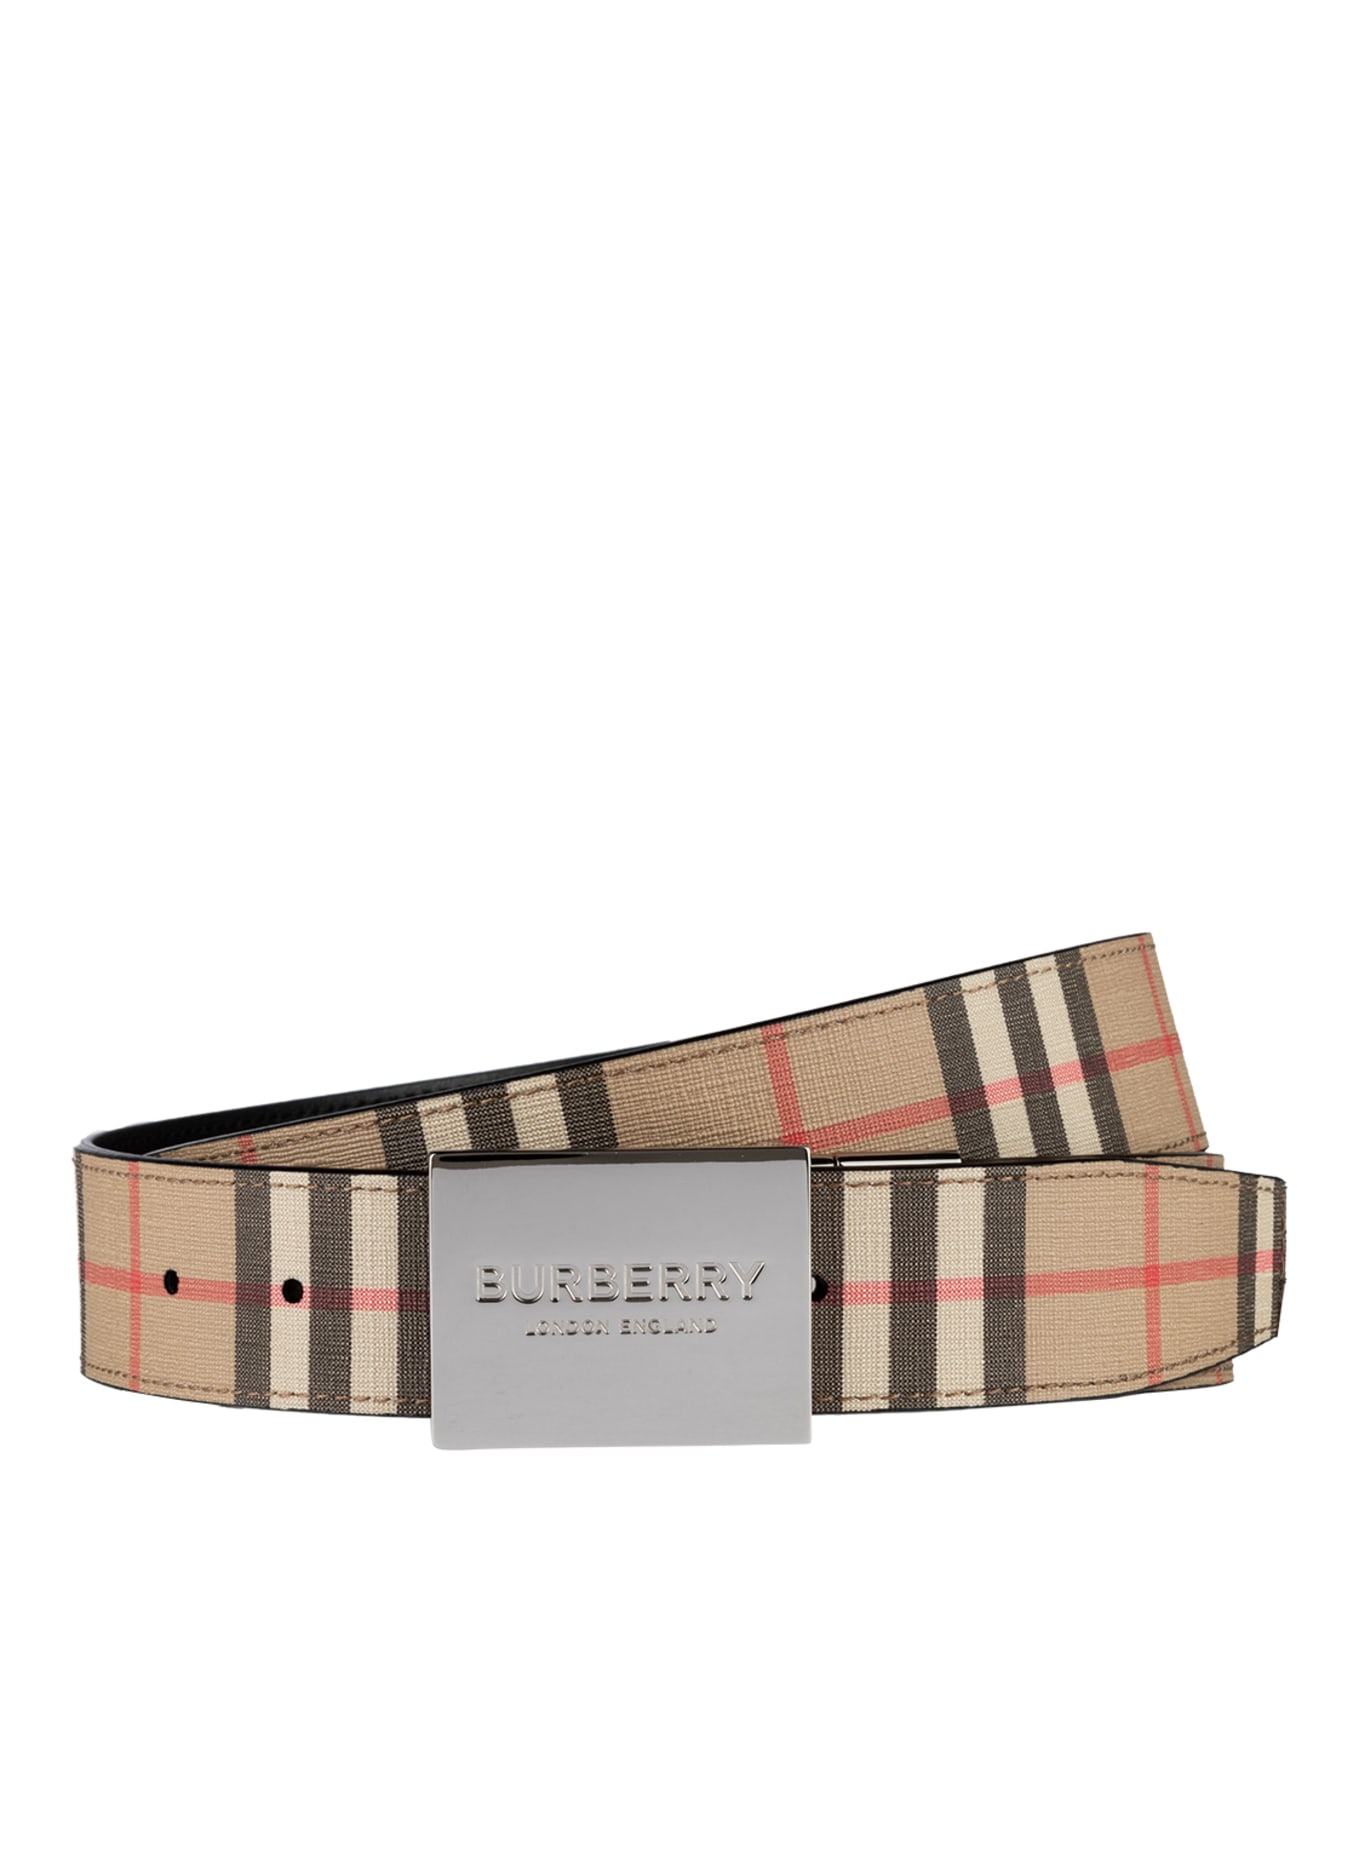 BURBERRY Reversible belt, Color: BEIGE/ BLACK/ RED (Image 1)